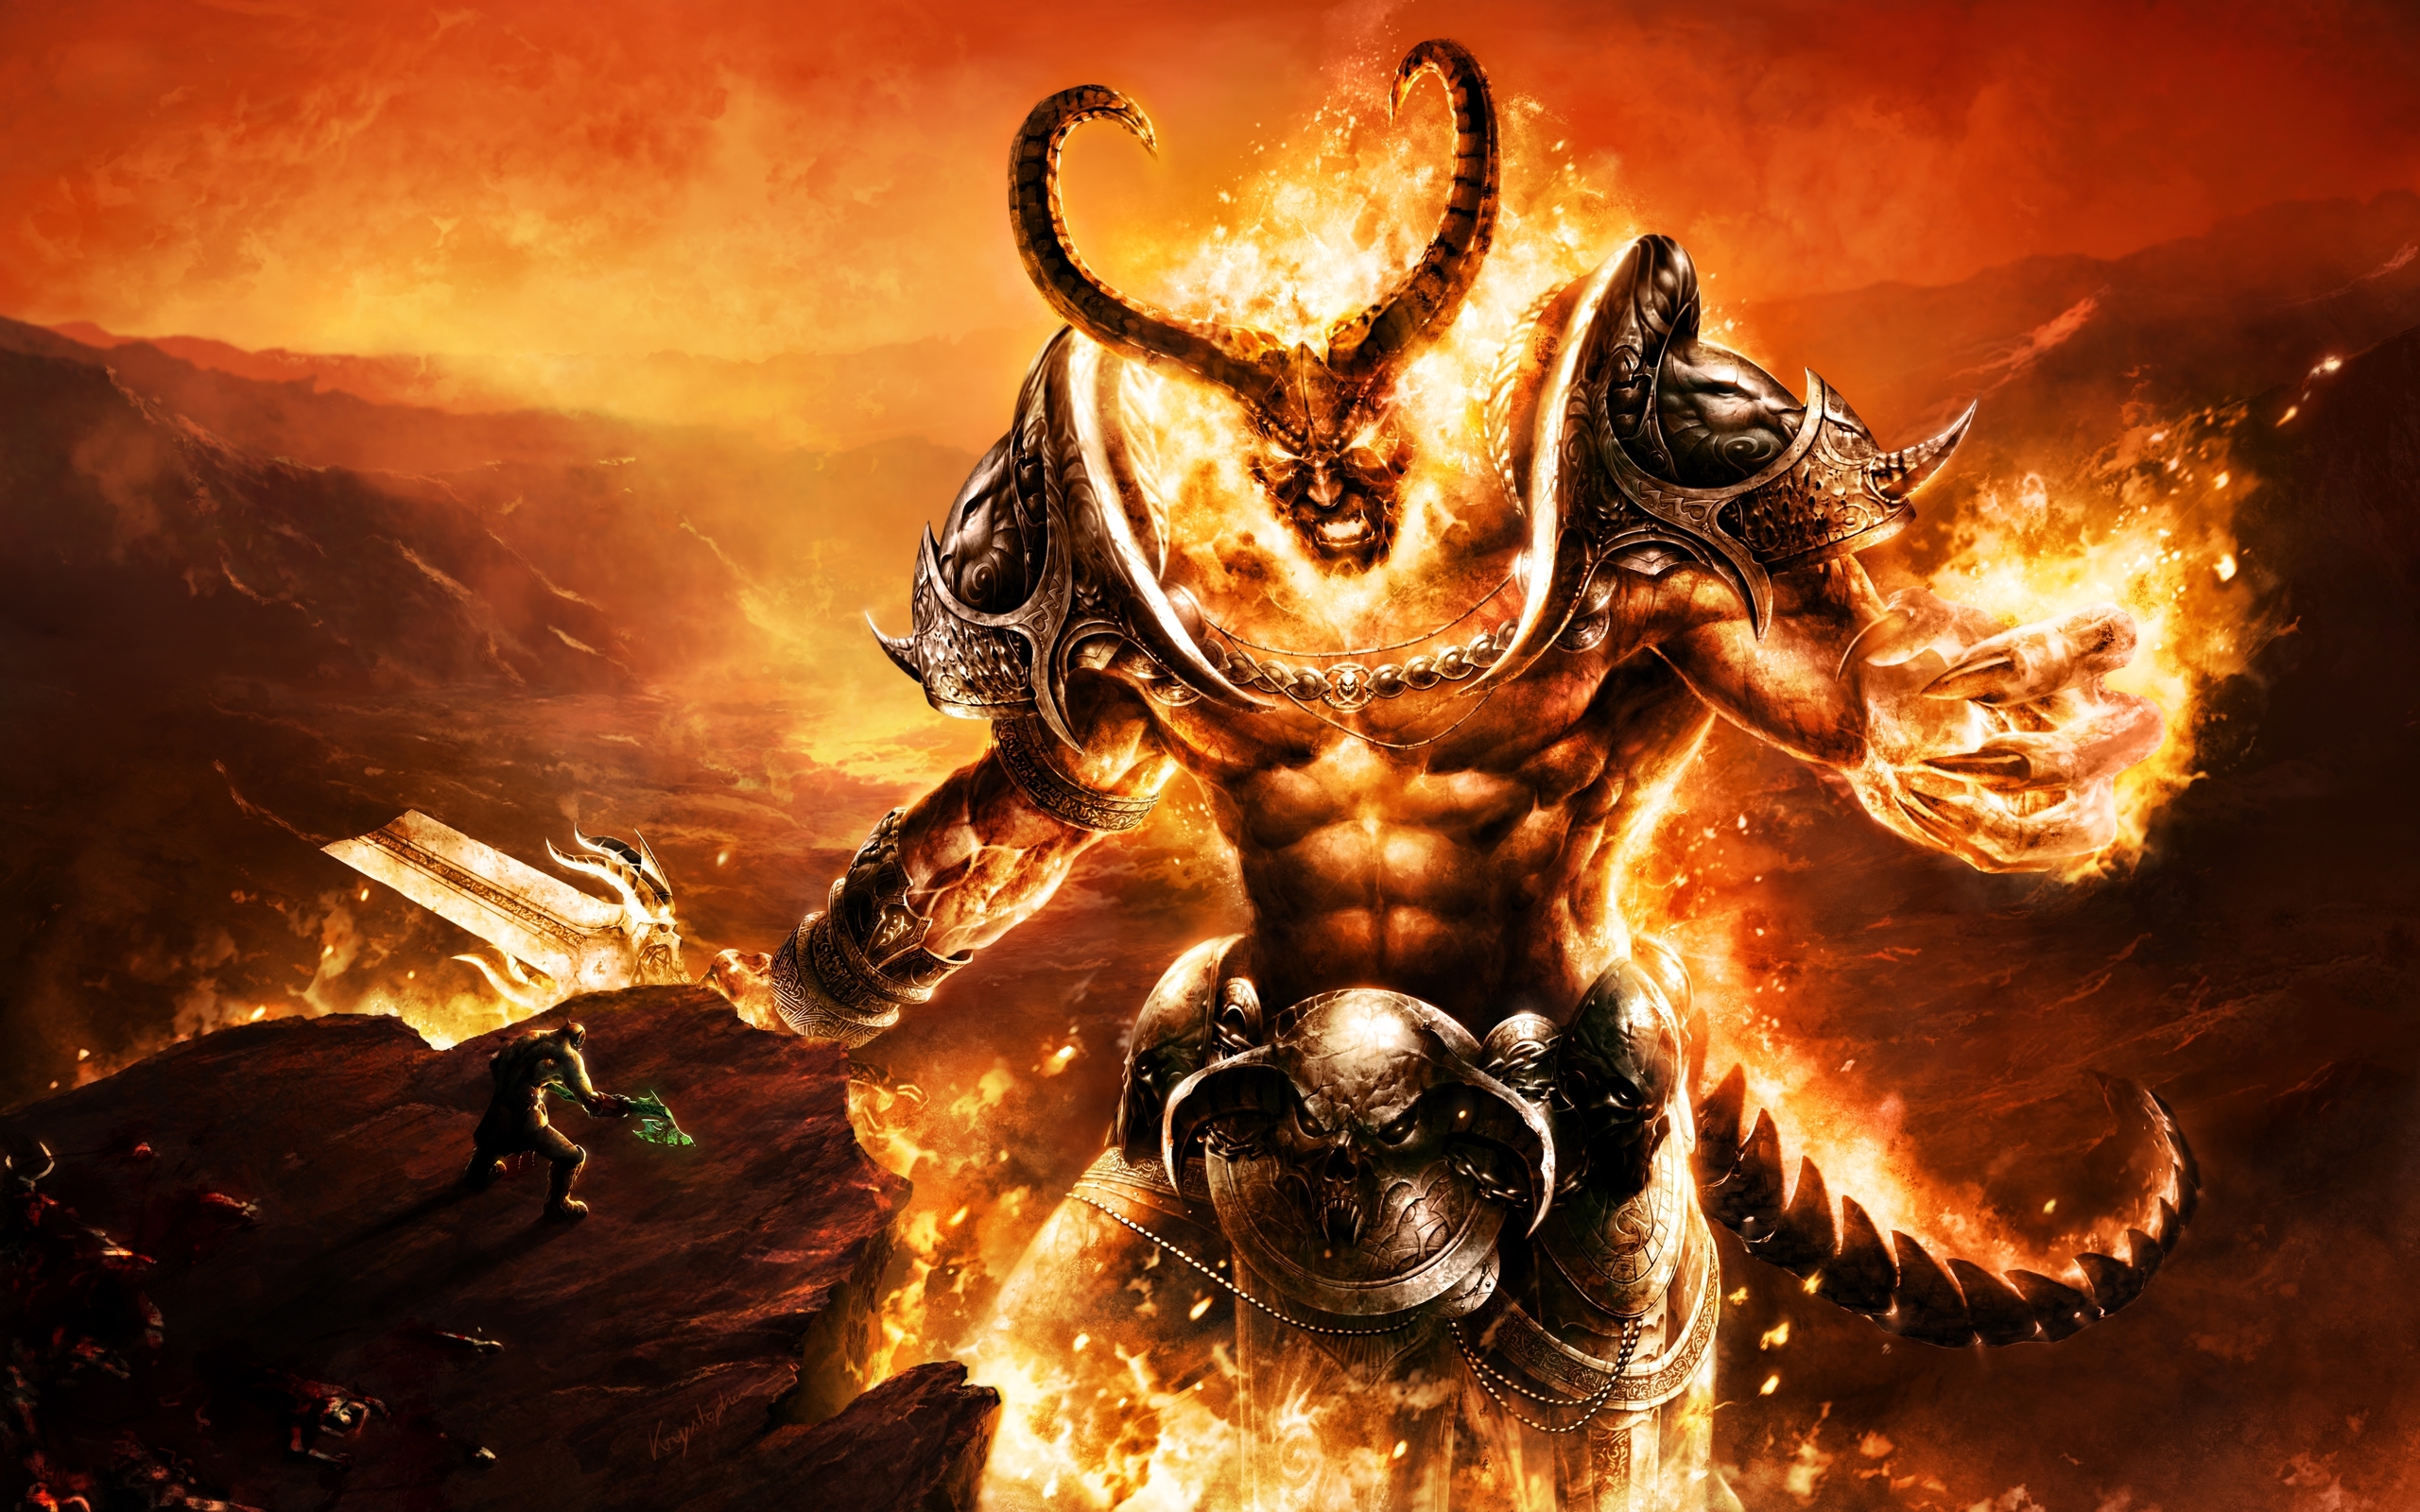 Descarga gratuita de fondo de pantalla para móvil de World Of Warcraft, Warcraft, Demonio, Fuego, Guerrero, Videojuego.